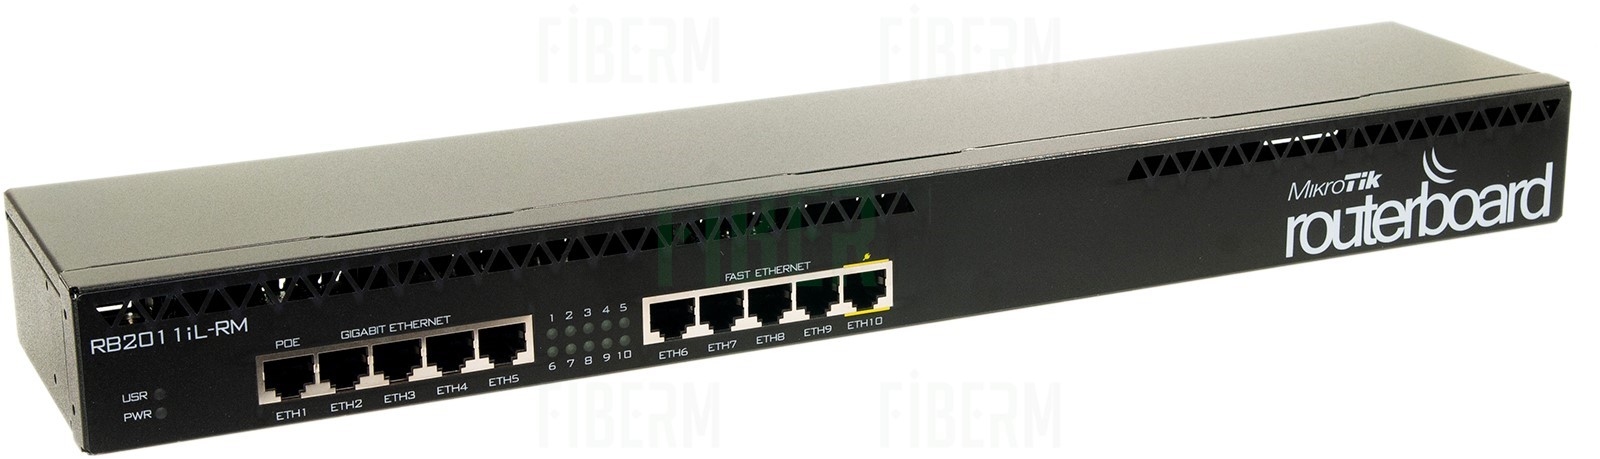 Mikrotik RouterBoard RB2011iL-RM 5 x 10/100 5 x 10/100/1000 PoE